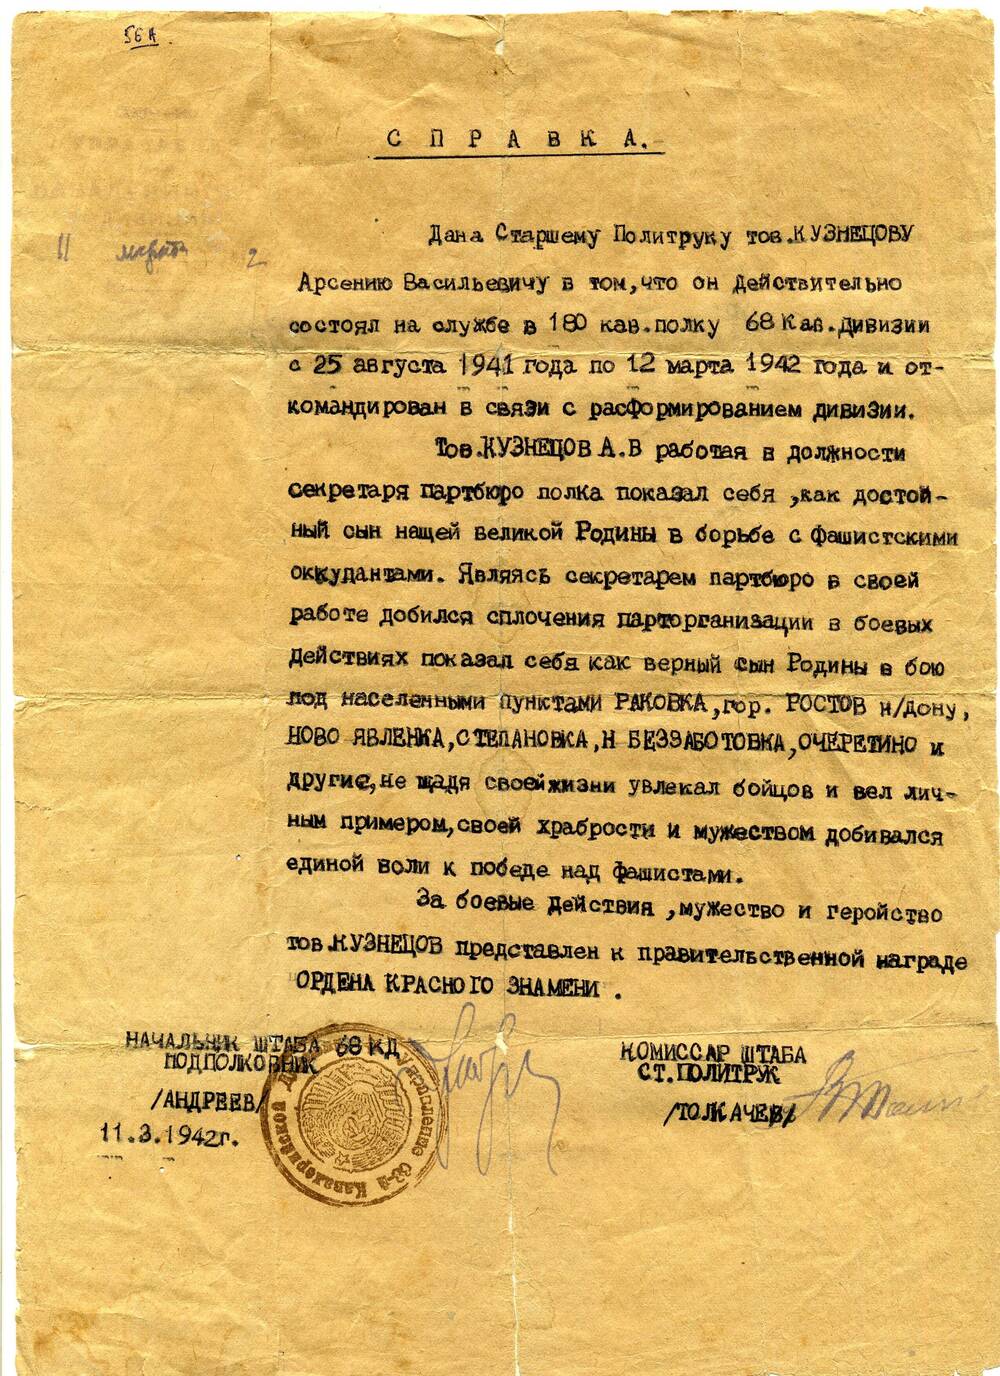 Справка, выданная старшему политруку А.В. Кузнецову в том, что он был секретарем партбюро 180 кав. полка 68 кав. дивизии с 25 августа 1941 года  по 12 марта 1942 года. 11.03.1942 г.